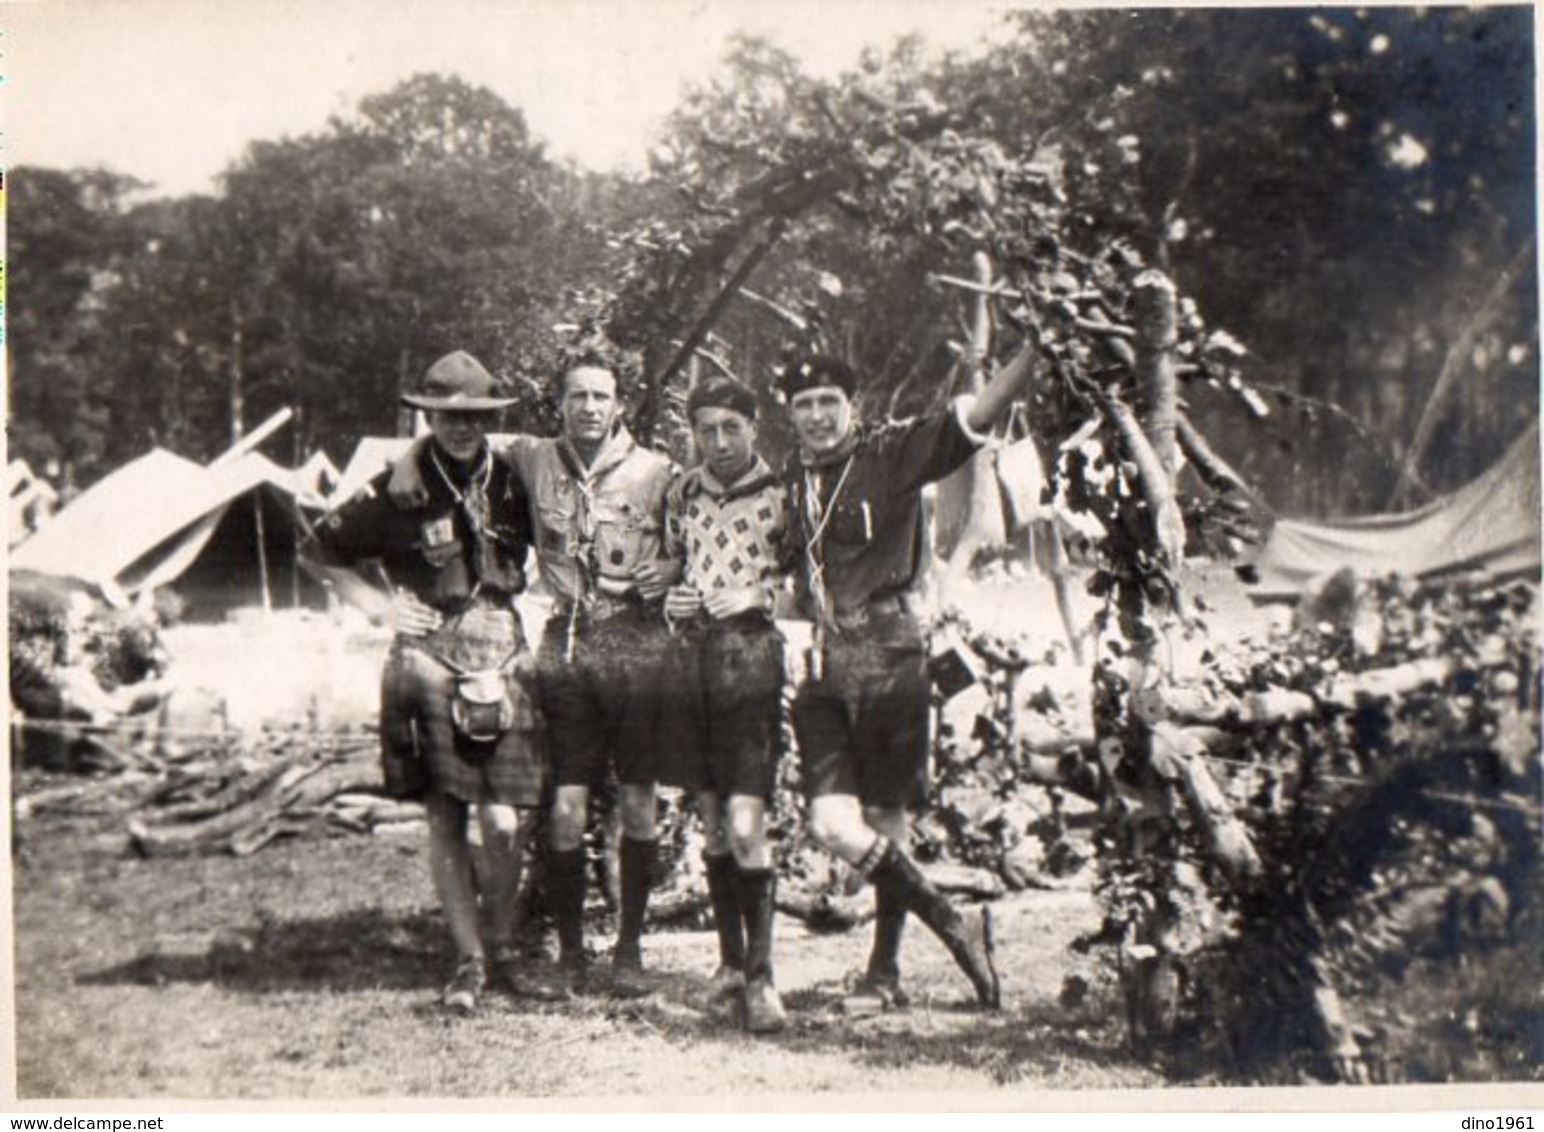 PHOTO 425 - 1929 - SCOUTISME - Photo Originale 18 X 13 - Rassemblement De Troupes De Scouts E.D.F à BIRKENHEAD - Lieux